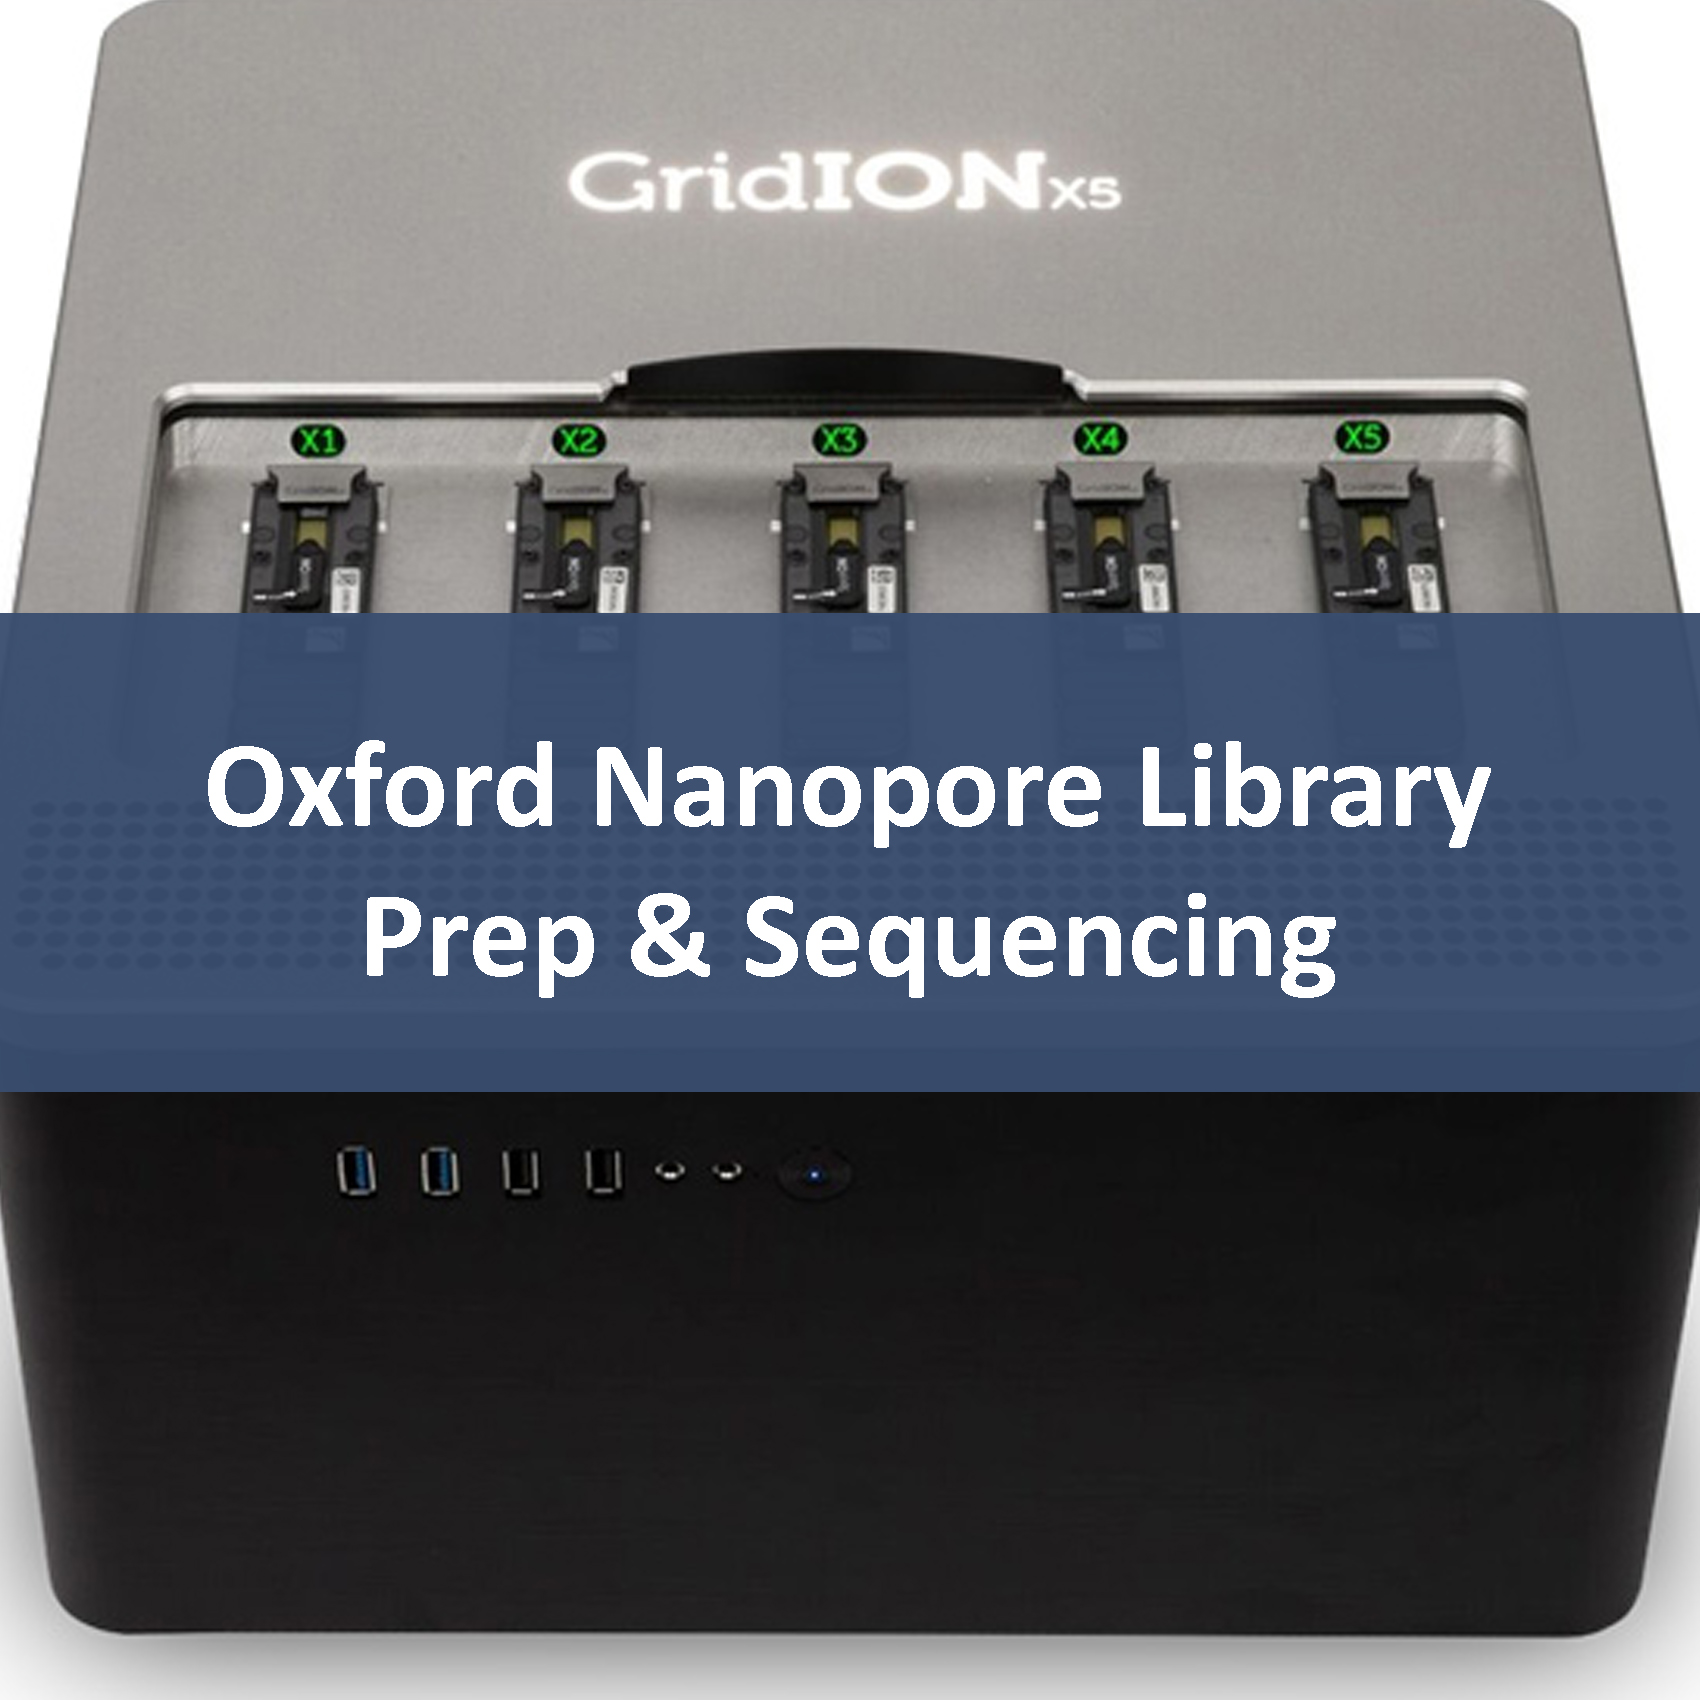 Oxford Nanopore Library Prep & Sequencing